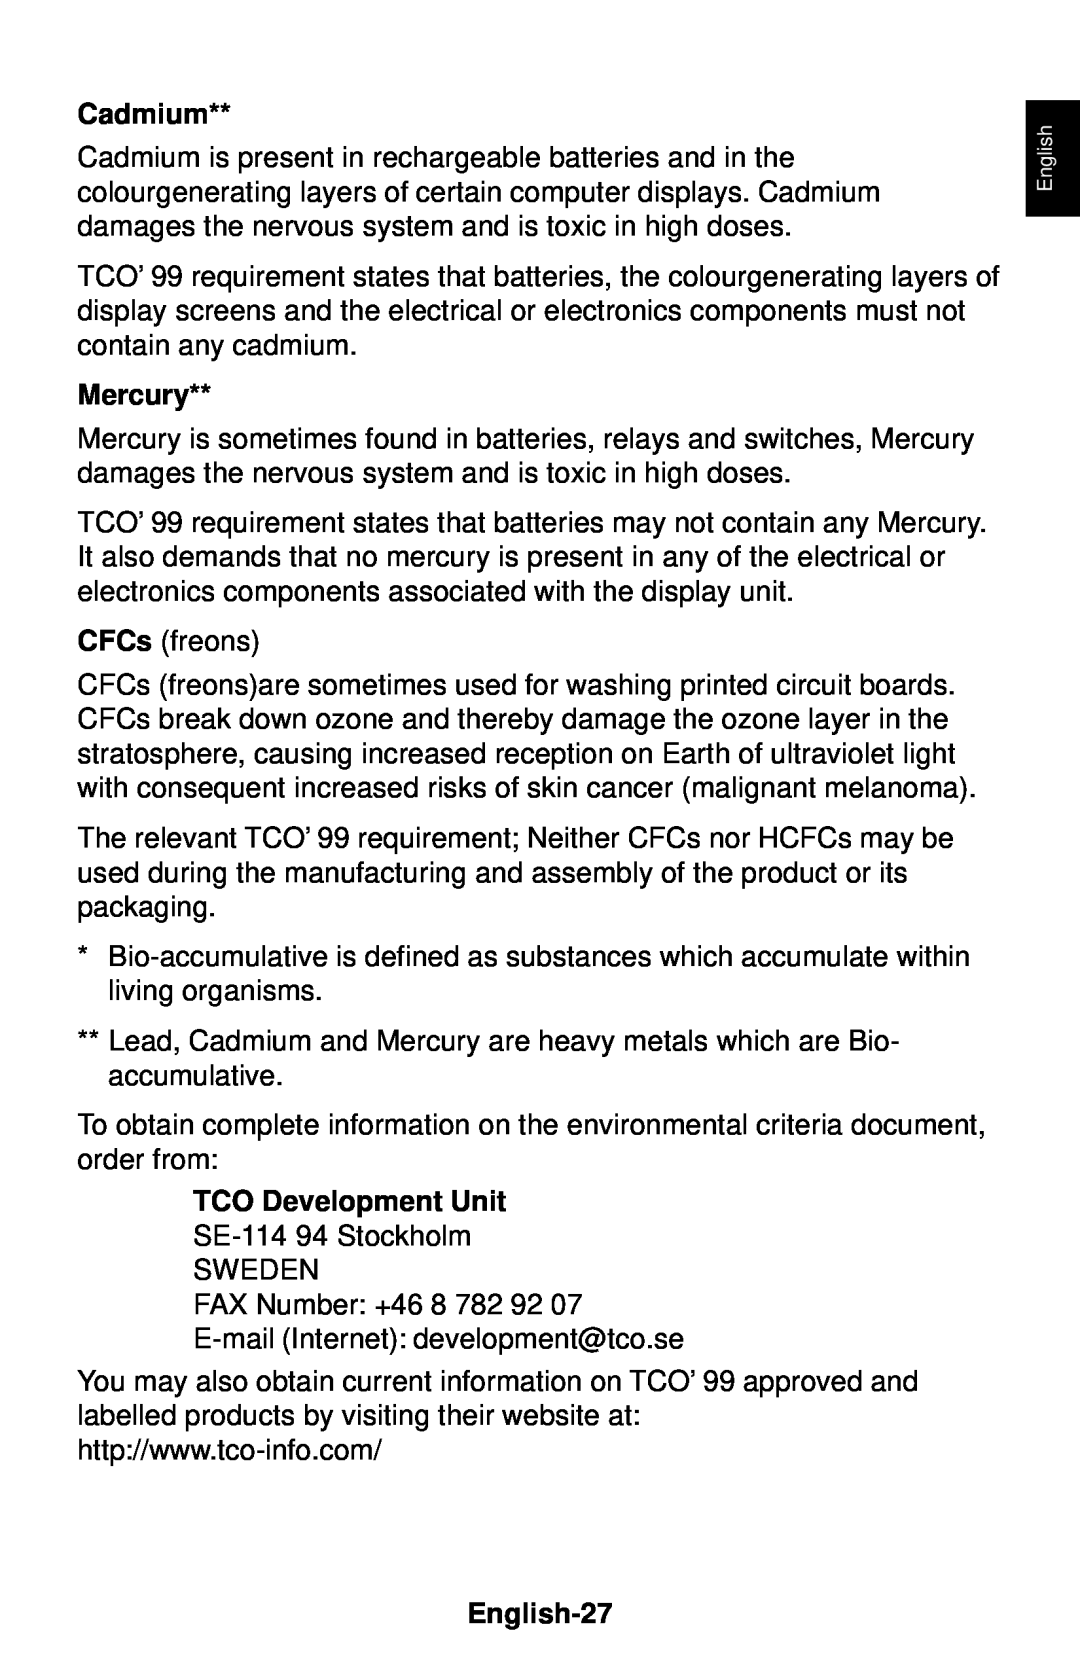 NEC LCD1830 user manual Cadmium, Mercury, TCO Development Unit, English-27 